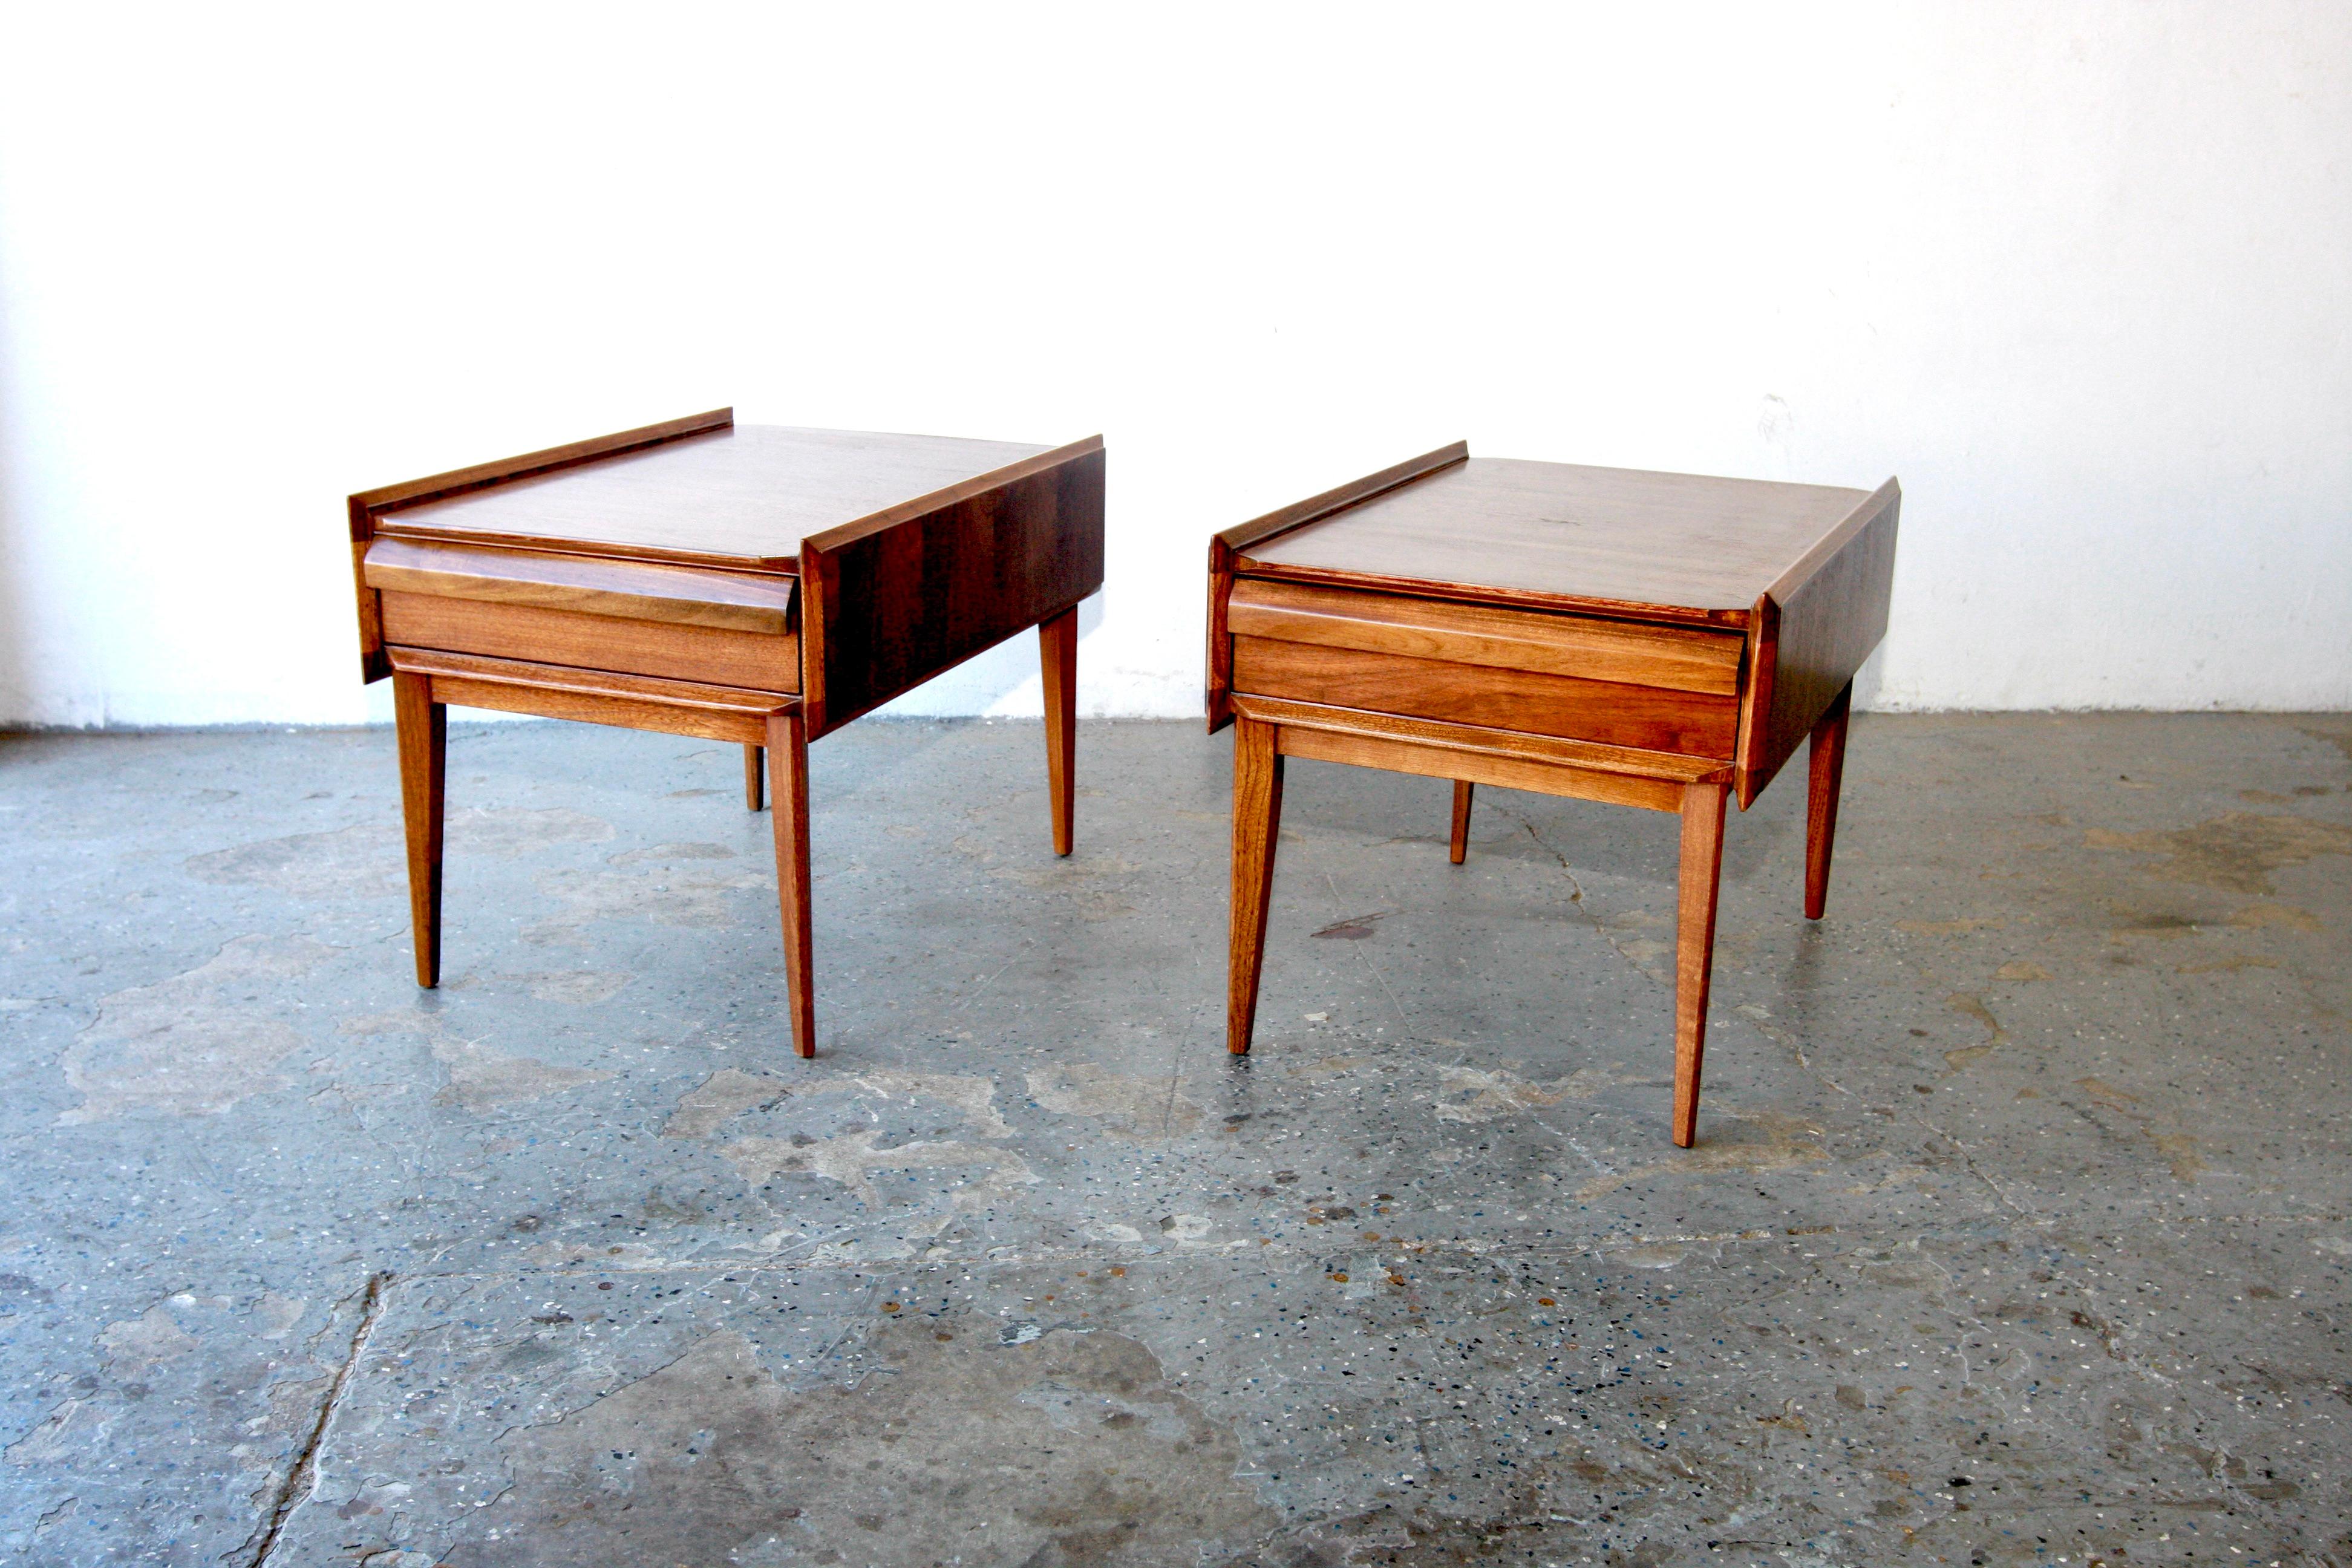 Dieses eklektische Paar Beistelltische aus Nussbaumholz, entworfen von Andre Bus für die First Edition Collection'S von Lane C. 1966, zeichnet sich durch scharfe Winkel, aufgebaute Seiten und eine skulpturale Schubladenfront aus.  Wegen ihres